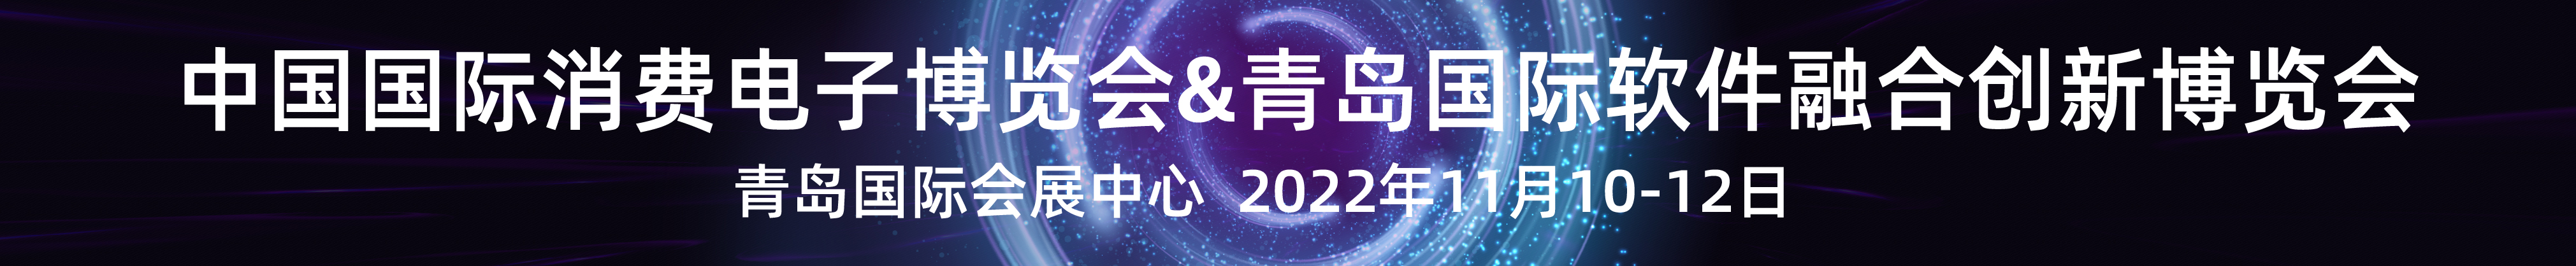 2022中国国际消费电子博览会/青岛国际软件融合创新博览会